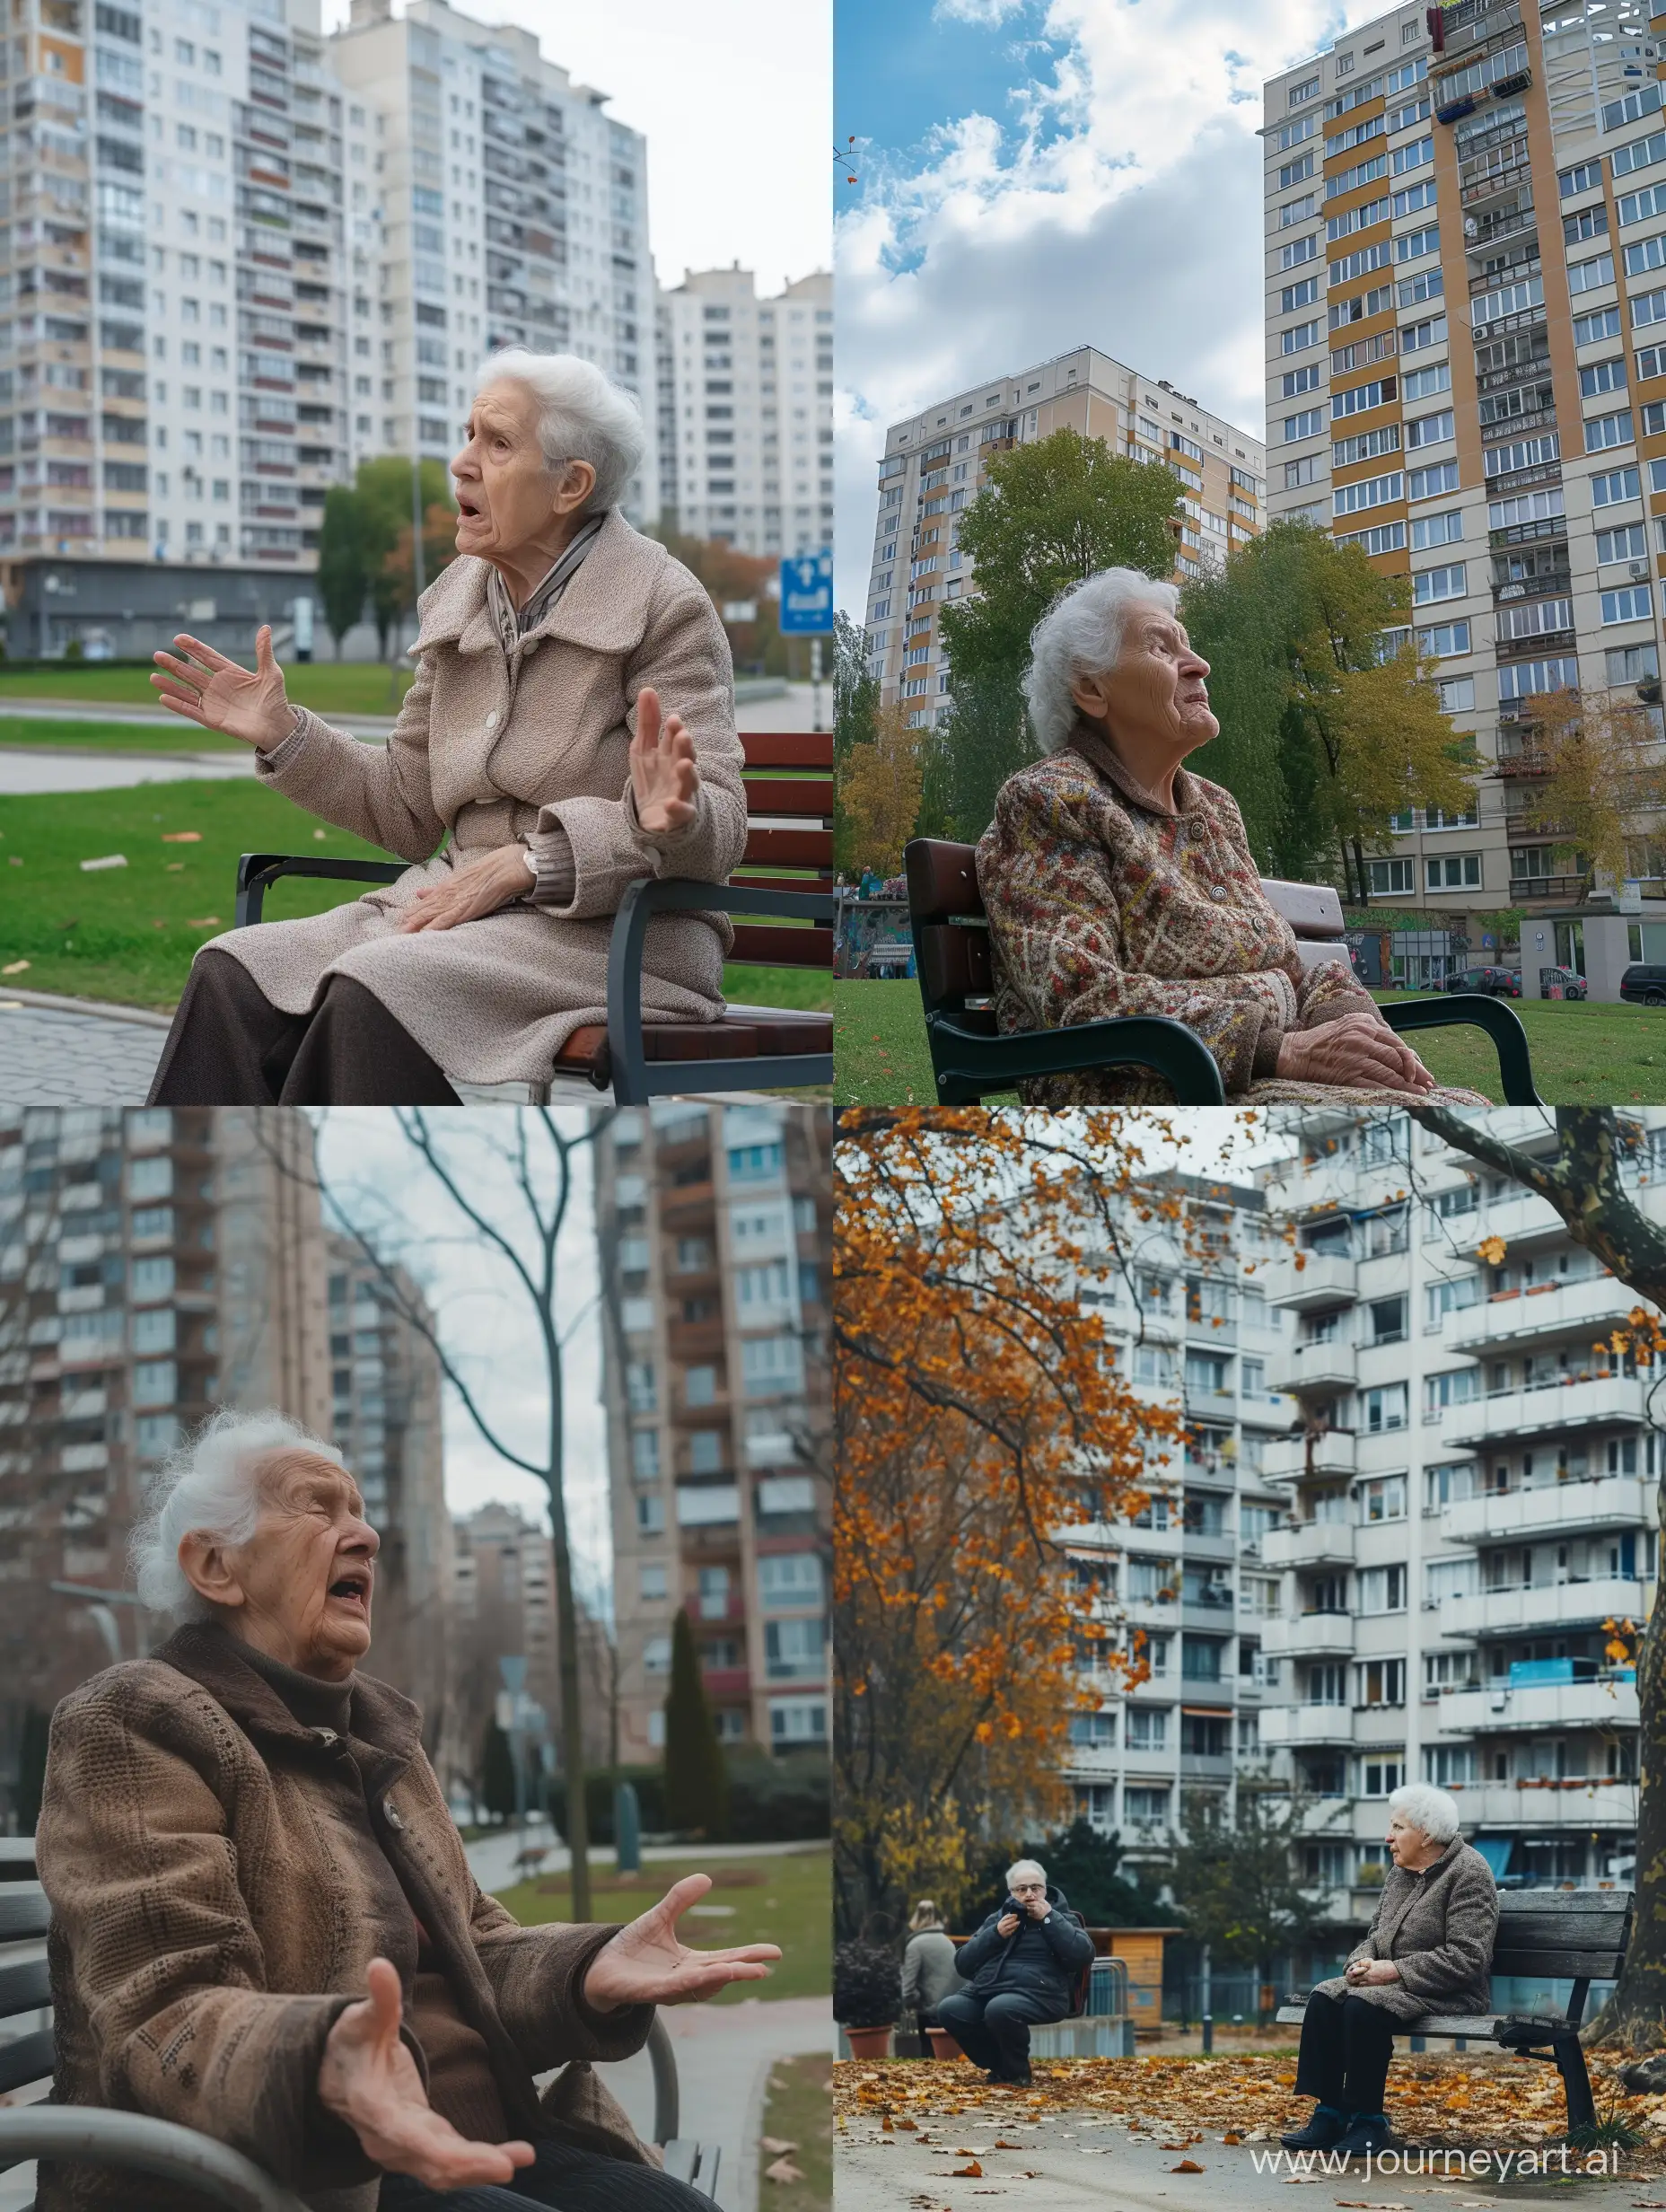 пожилая европейская женщина сидит на скамейке возле многоэтажного дома и жалуется соседкам